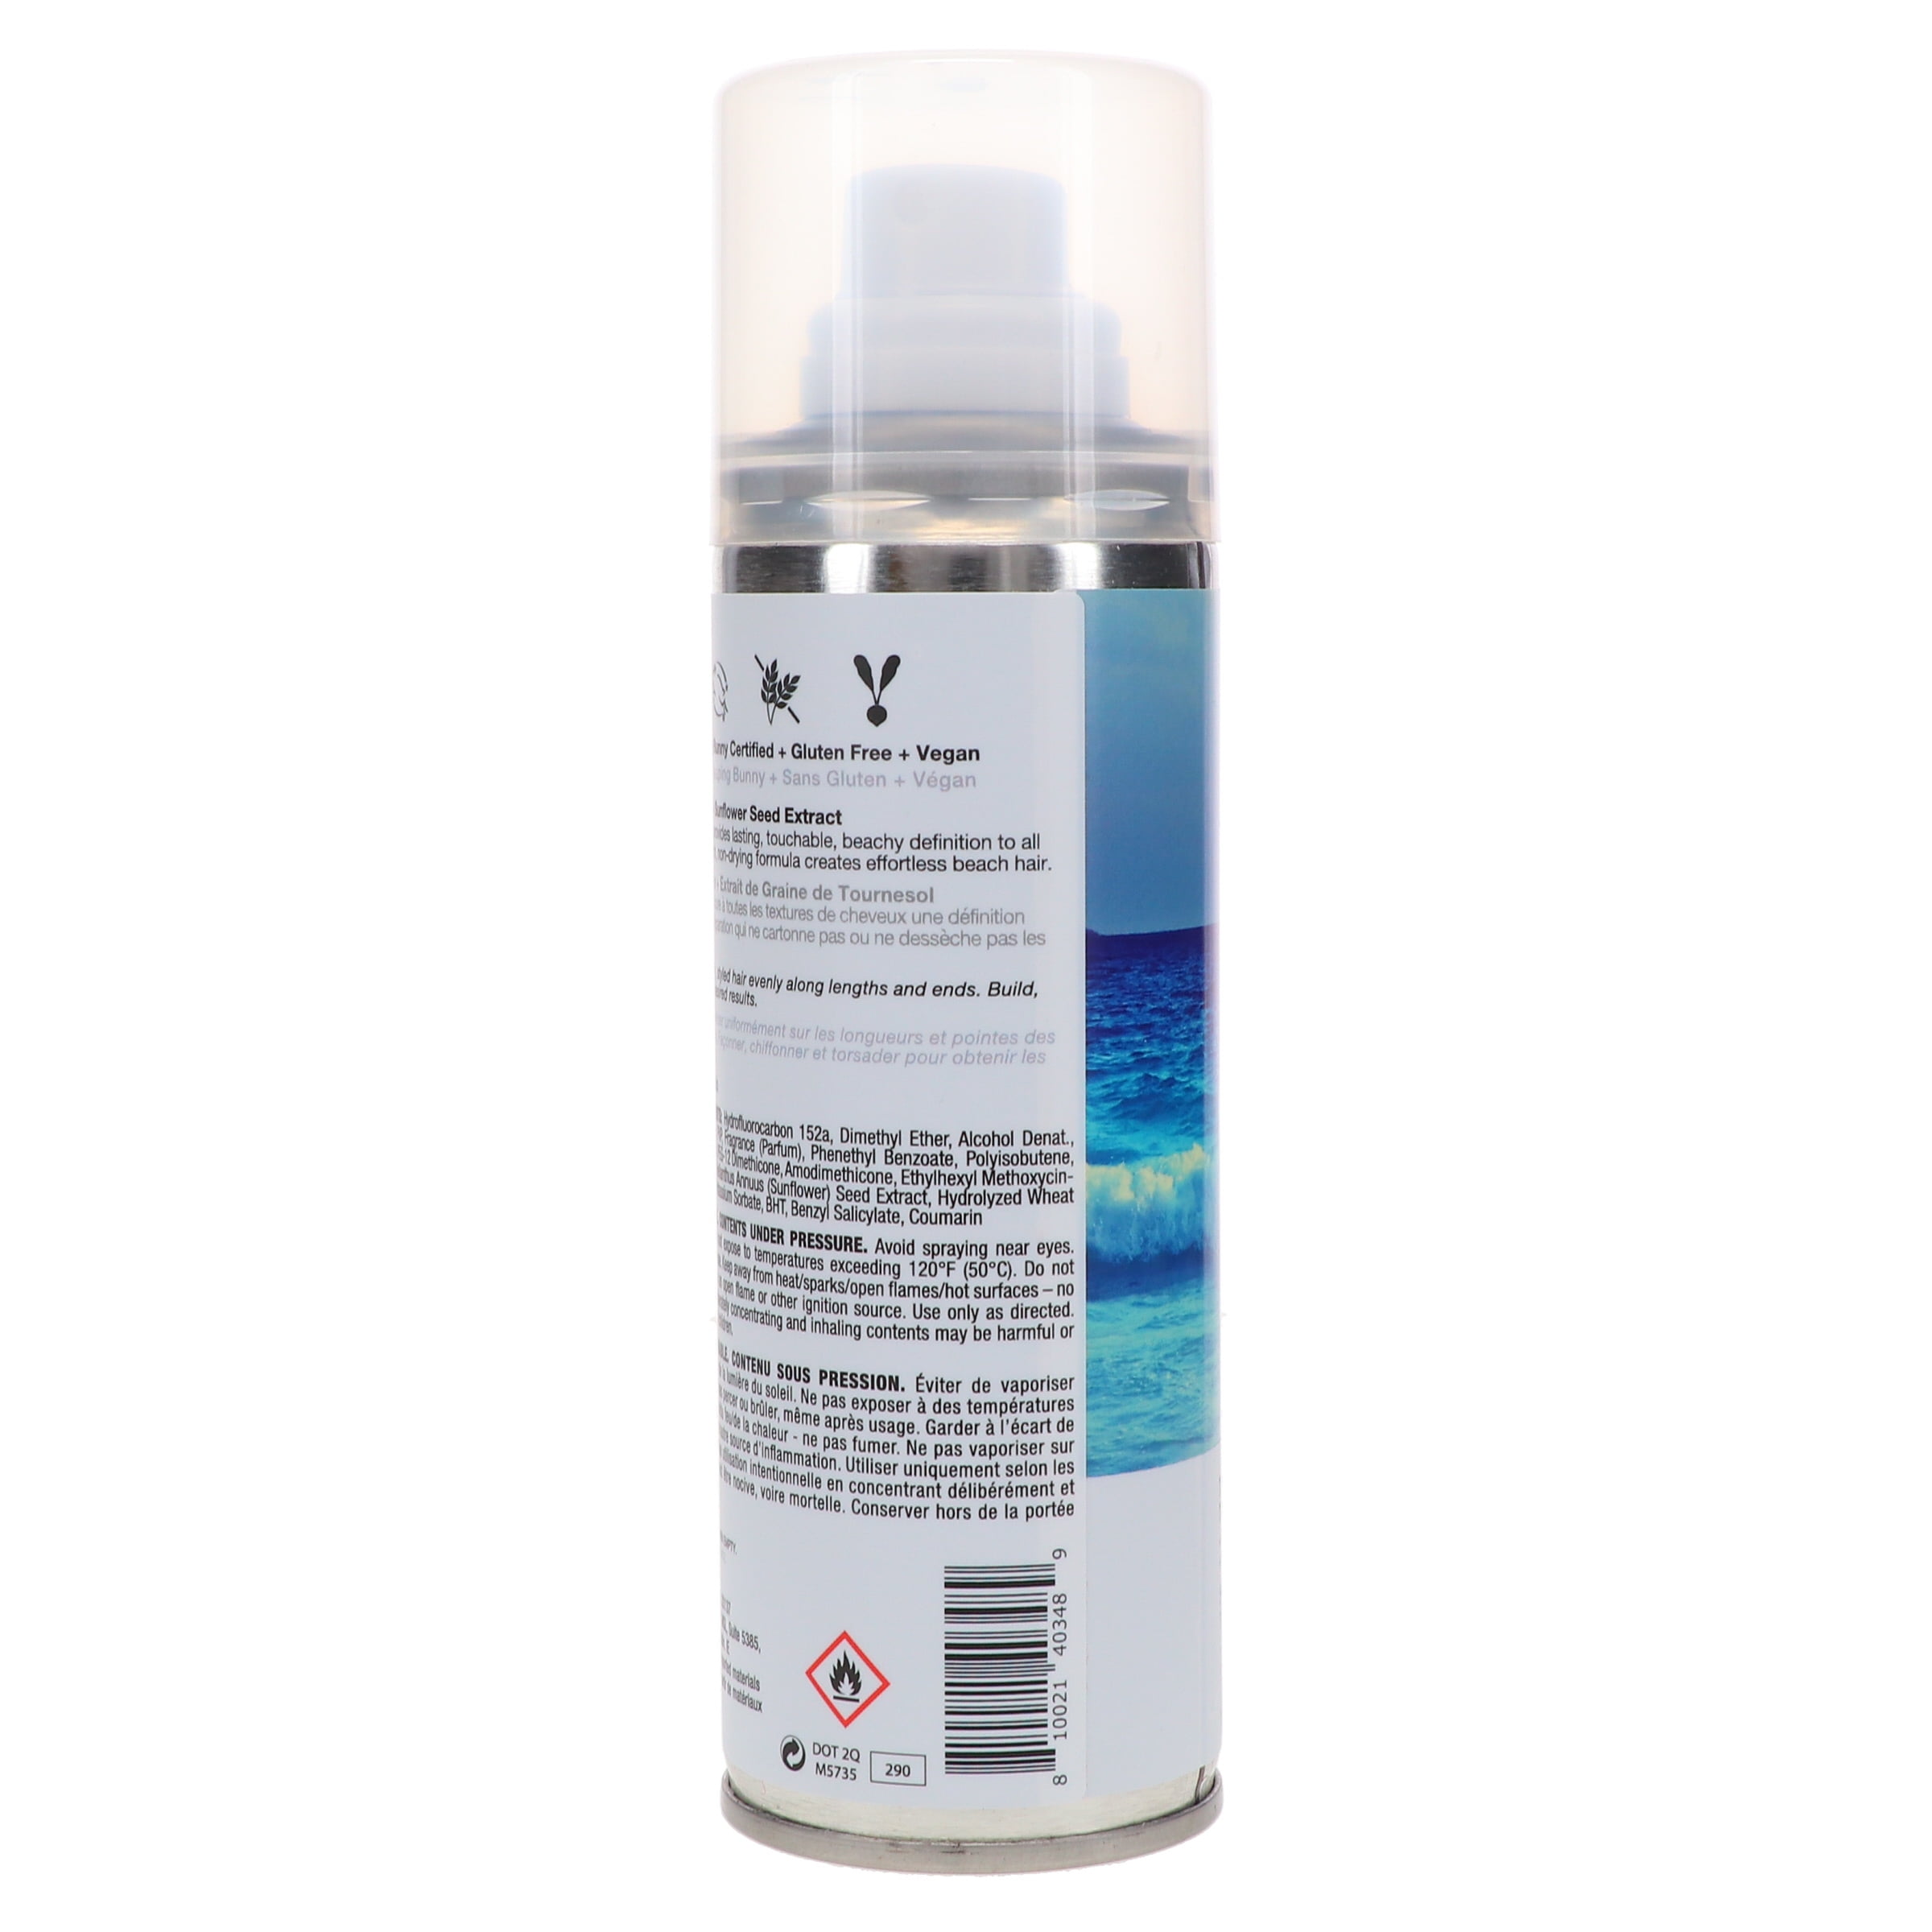 IGK Beach Club Texture Spray - Reviews